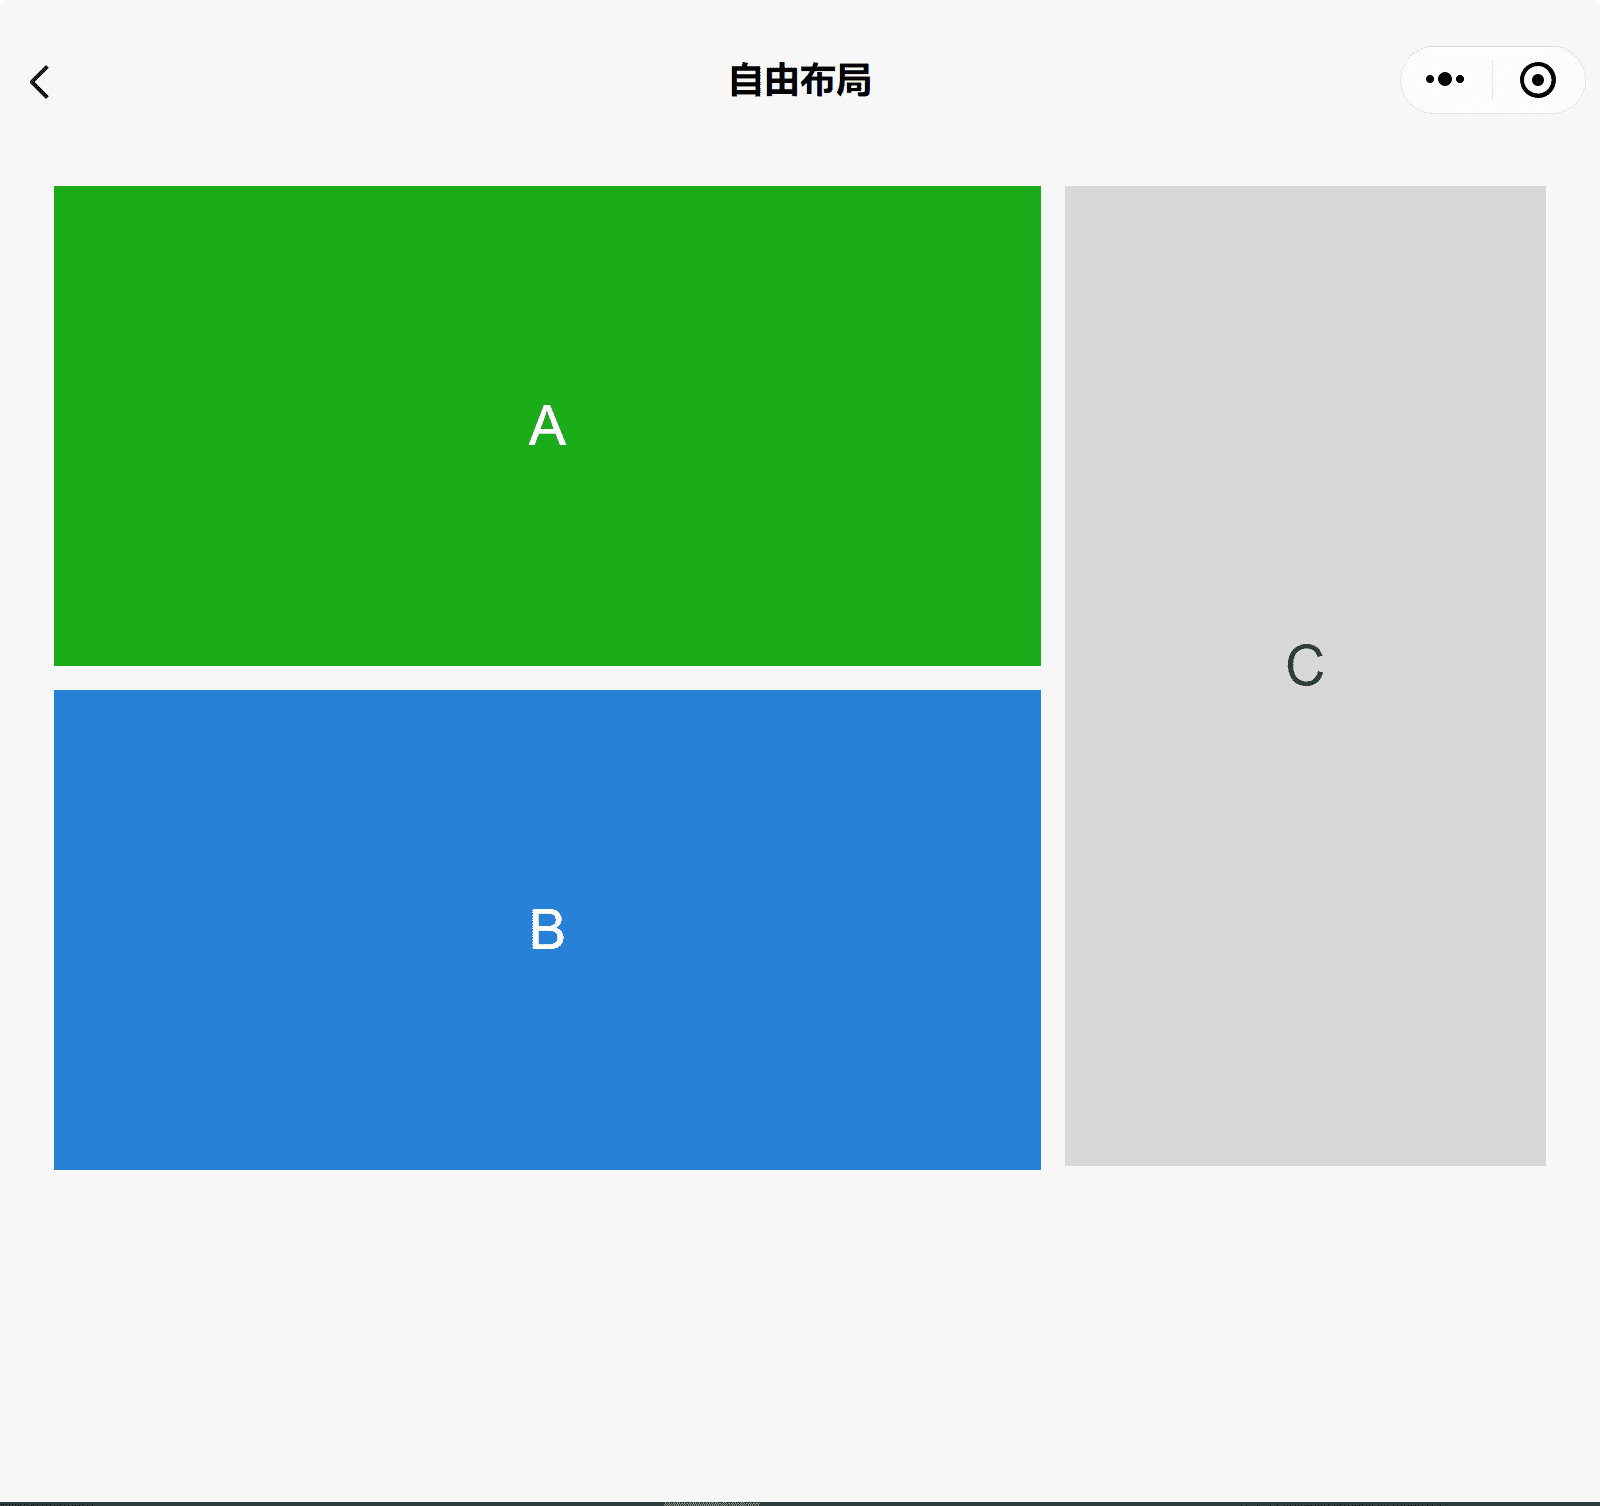 App de demonstração dos componentes do WeChat em uma janela ampla mostrando três caixas A, B e C com A empilhada sobre B e C na lateral.